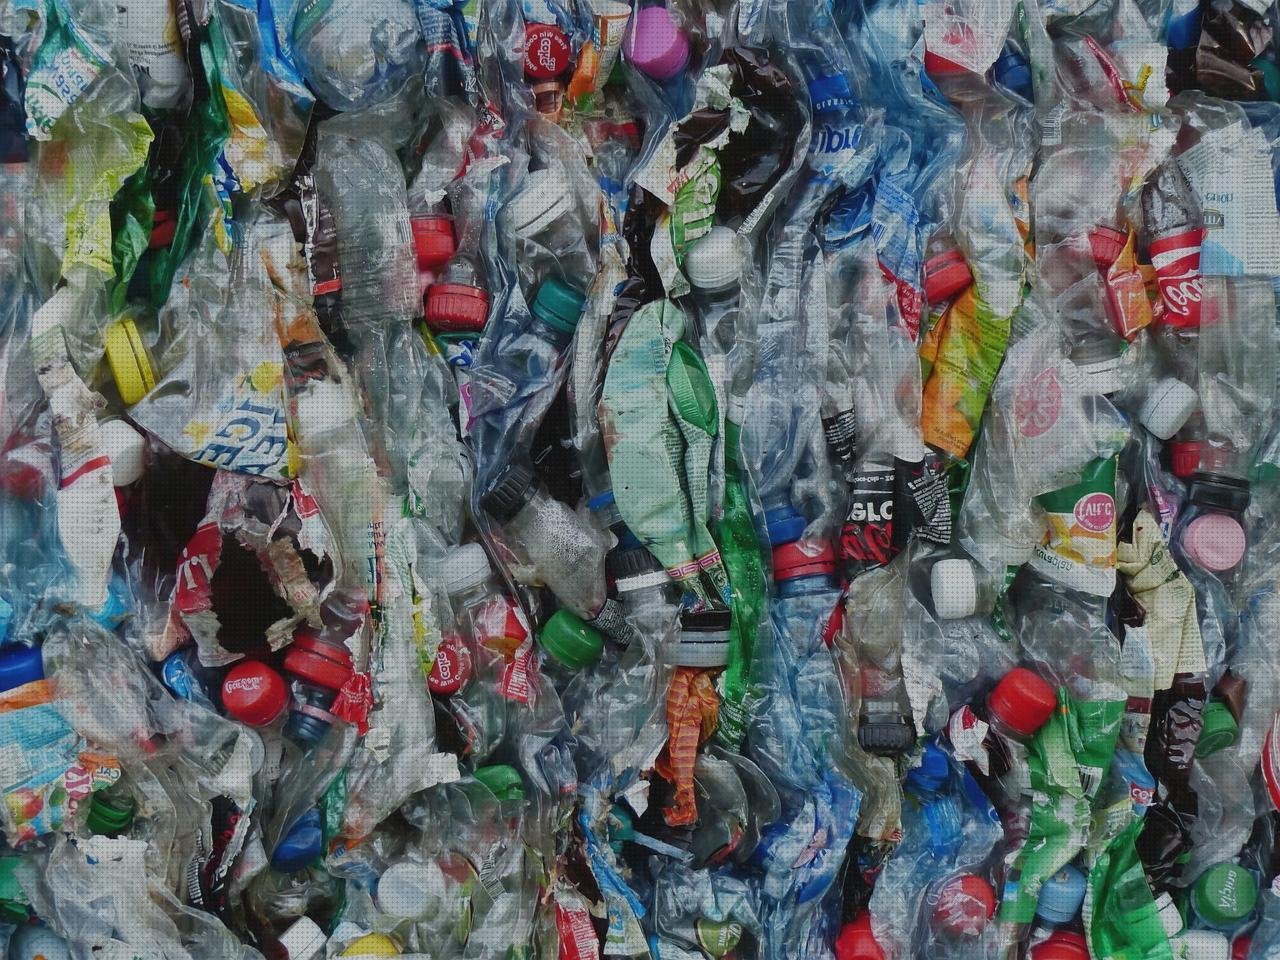 Las mejores marcas de correillas de plástico telhas de plástico aroz con plástico botella de plástico rellenable